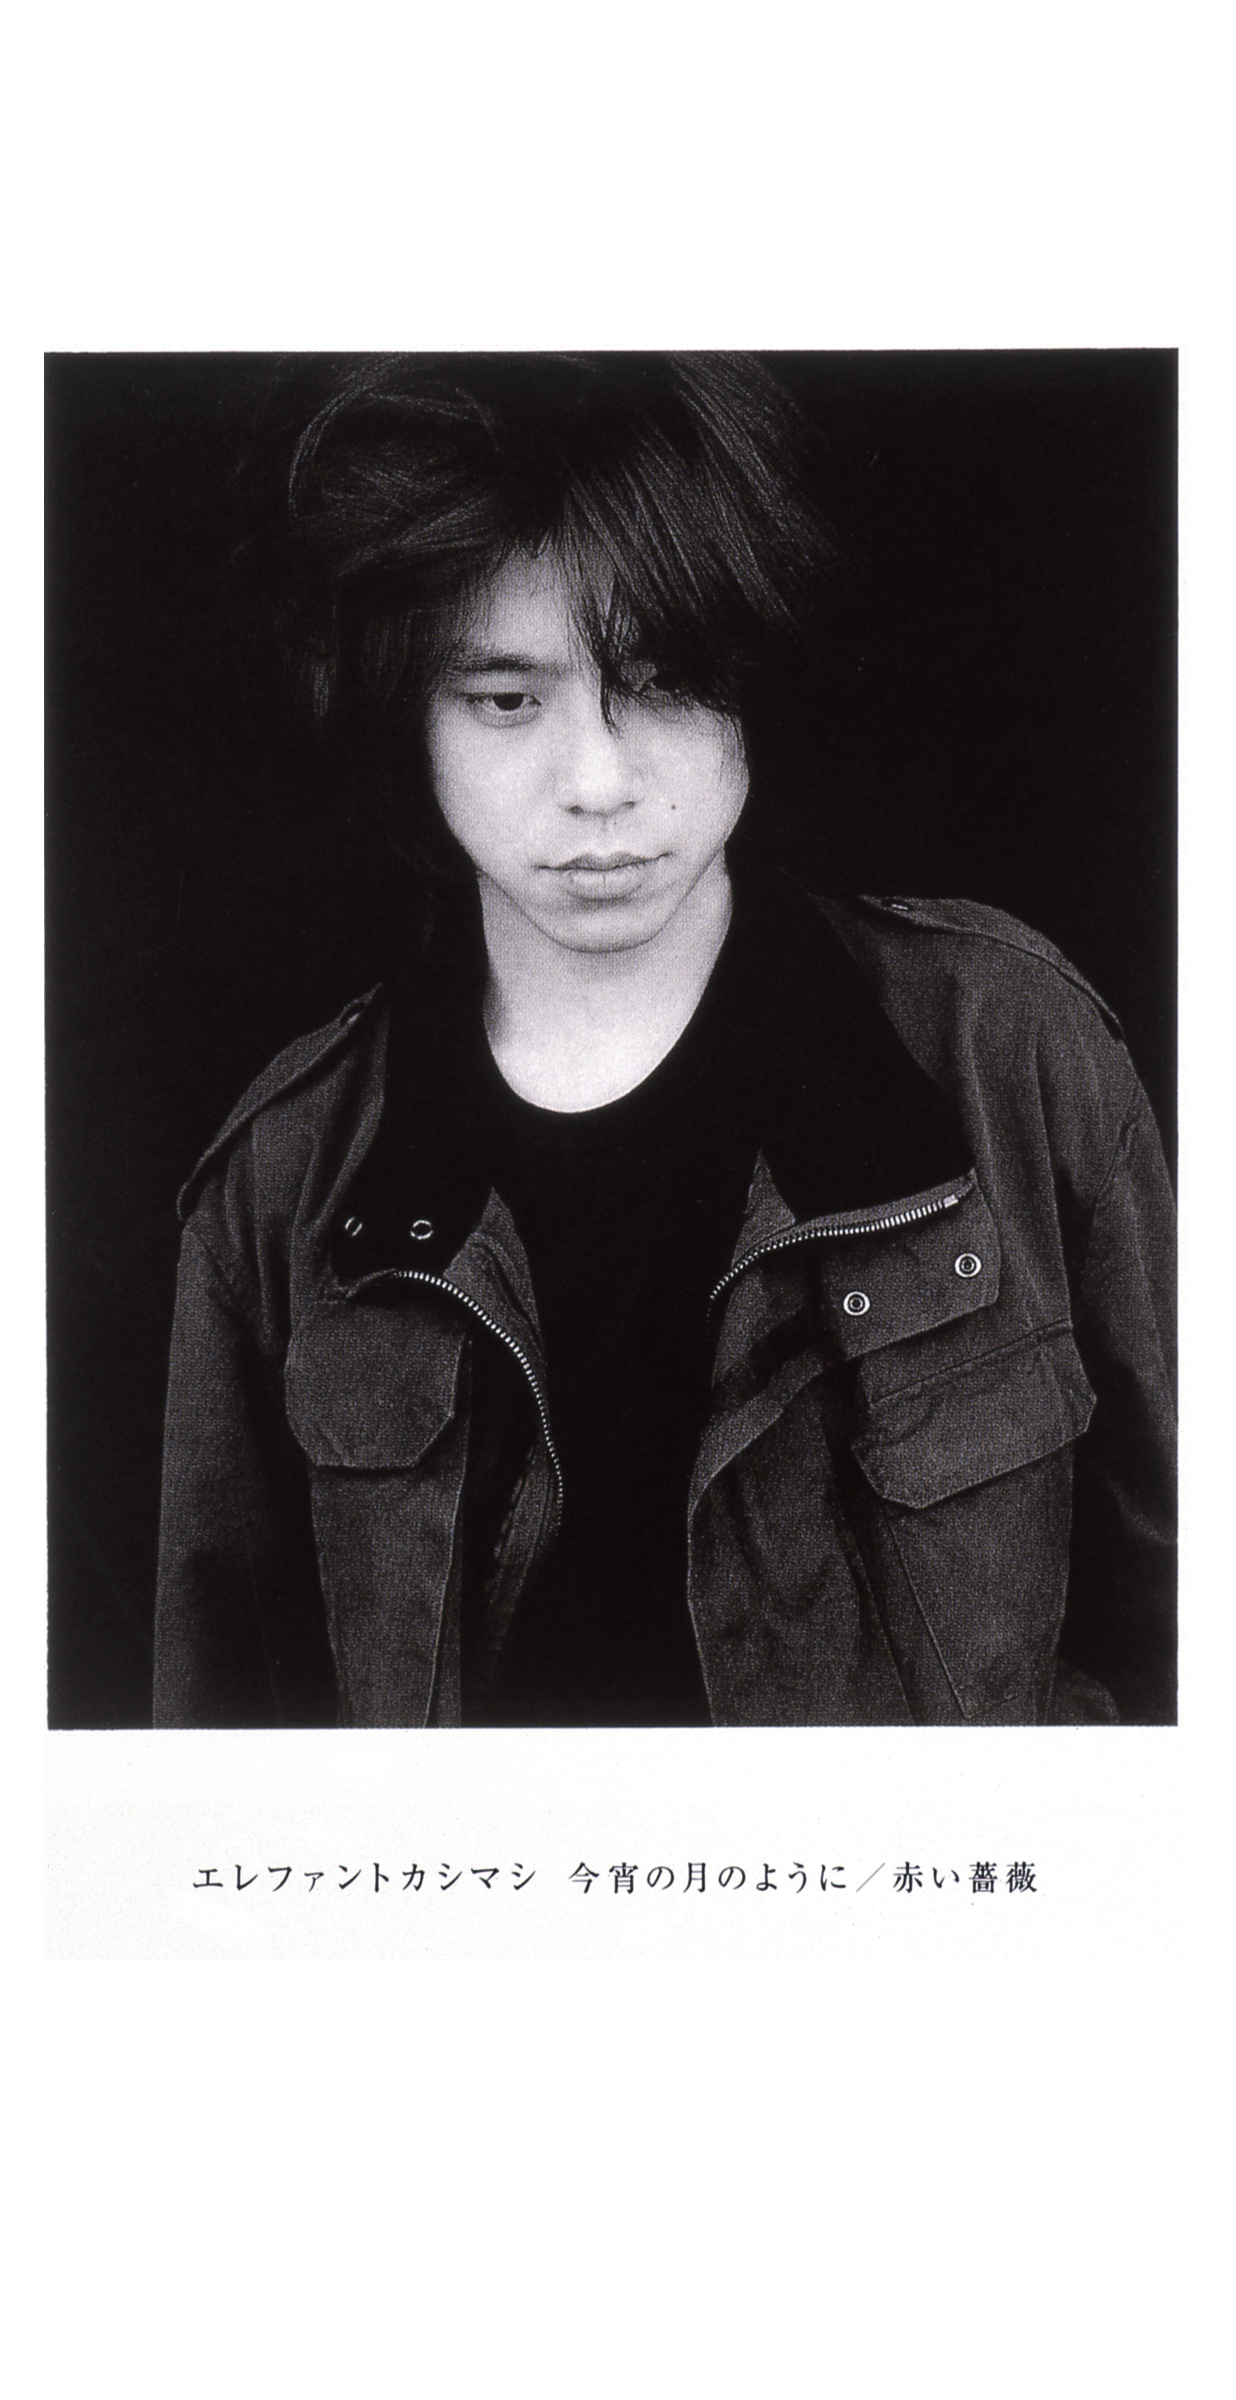 エレファントカシマシ 15thシングル『今宵の月のように』(1997年7月30日発売) 高画質CDジャケット画像 (ジャケ写)